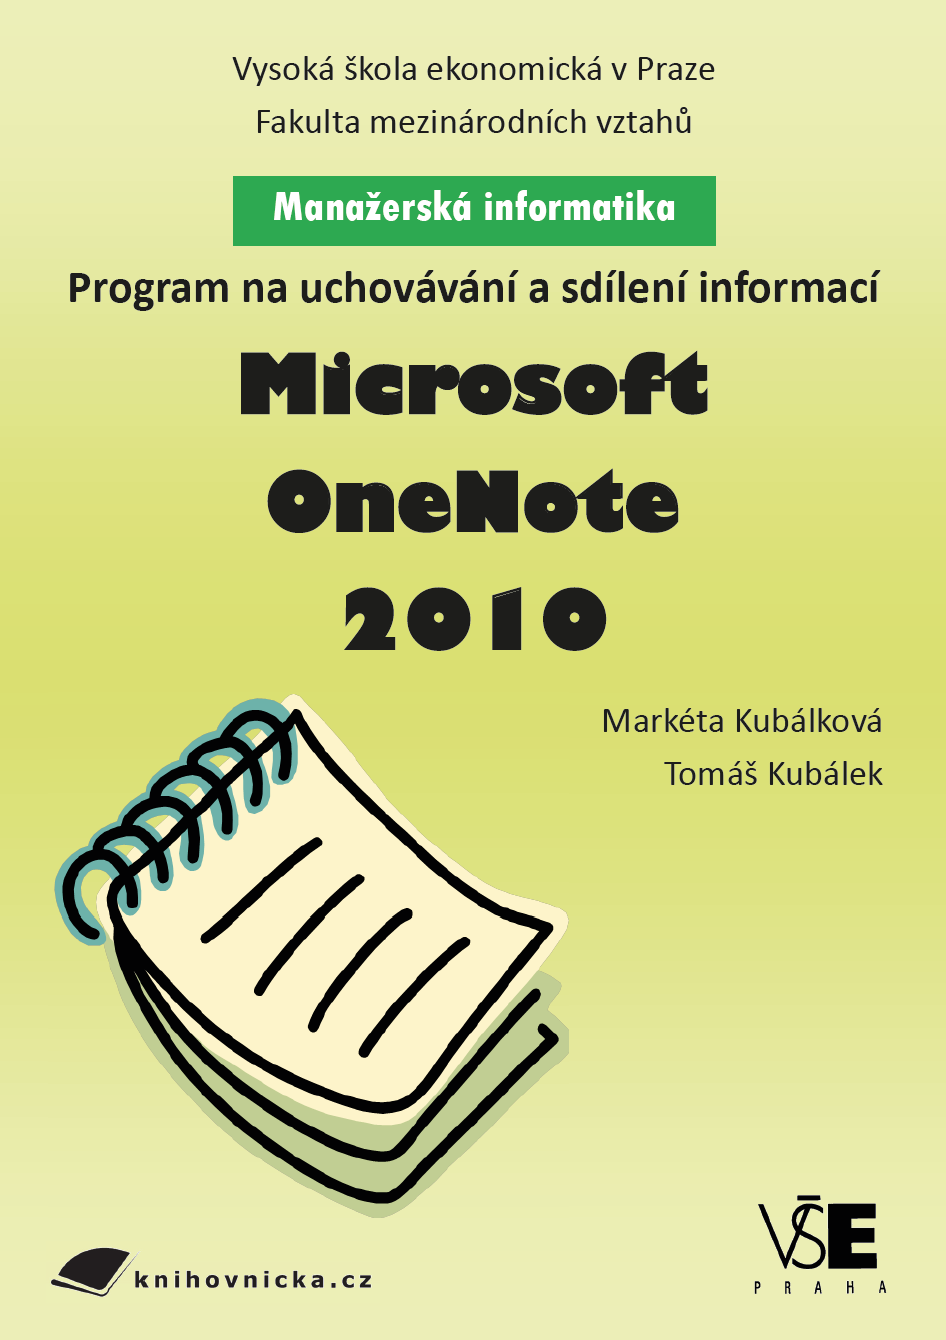 Program na uchovávání a sdílení informací: Microsoft OneNote 2010